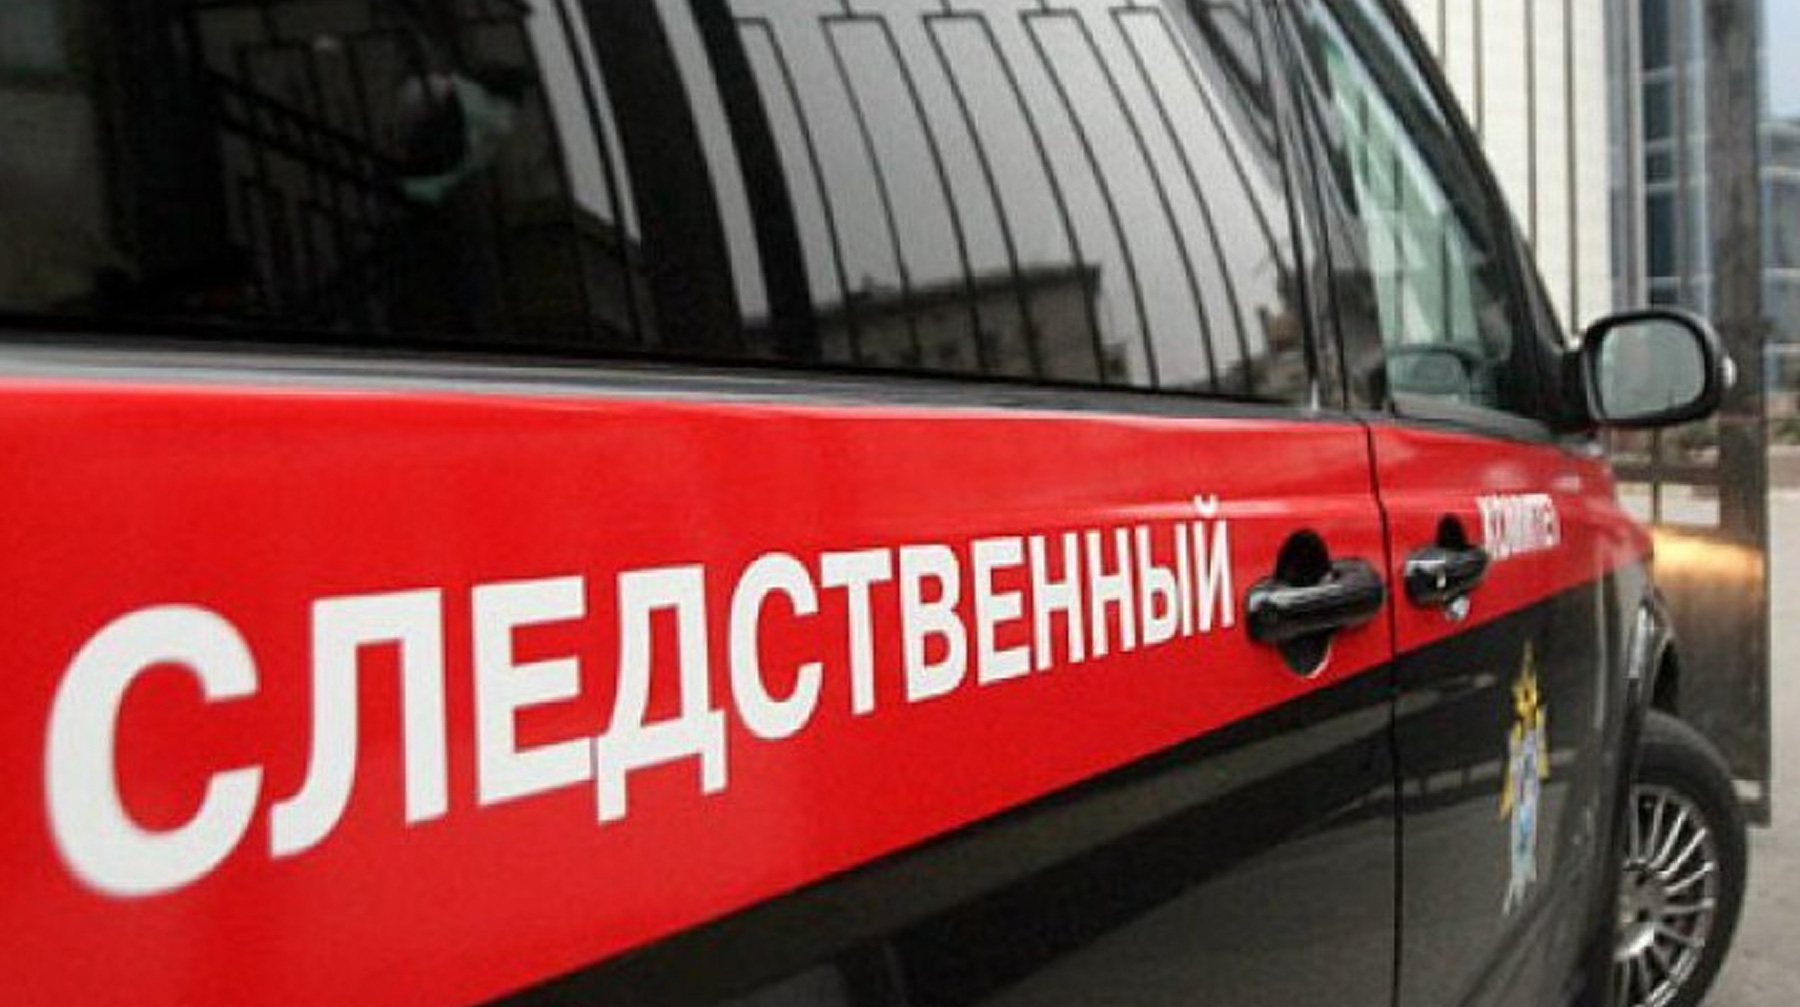 Рядом с телом Дмитрия Савина лежало огнестрельное оружие, сообщили источники информагентств Фото: © sledcom.ru